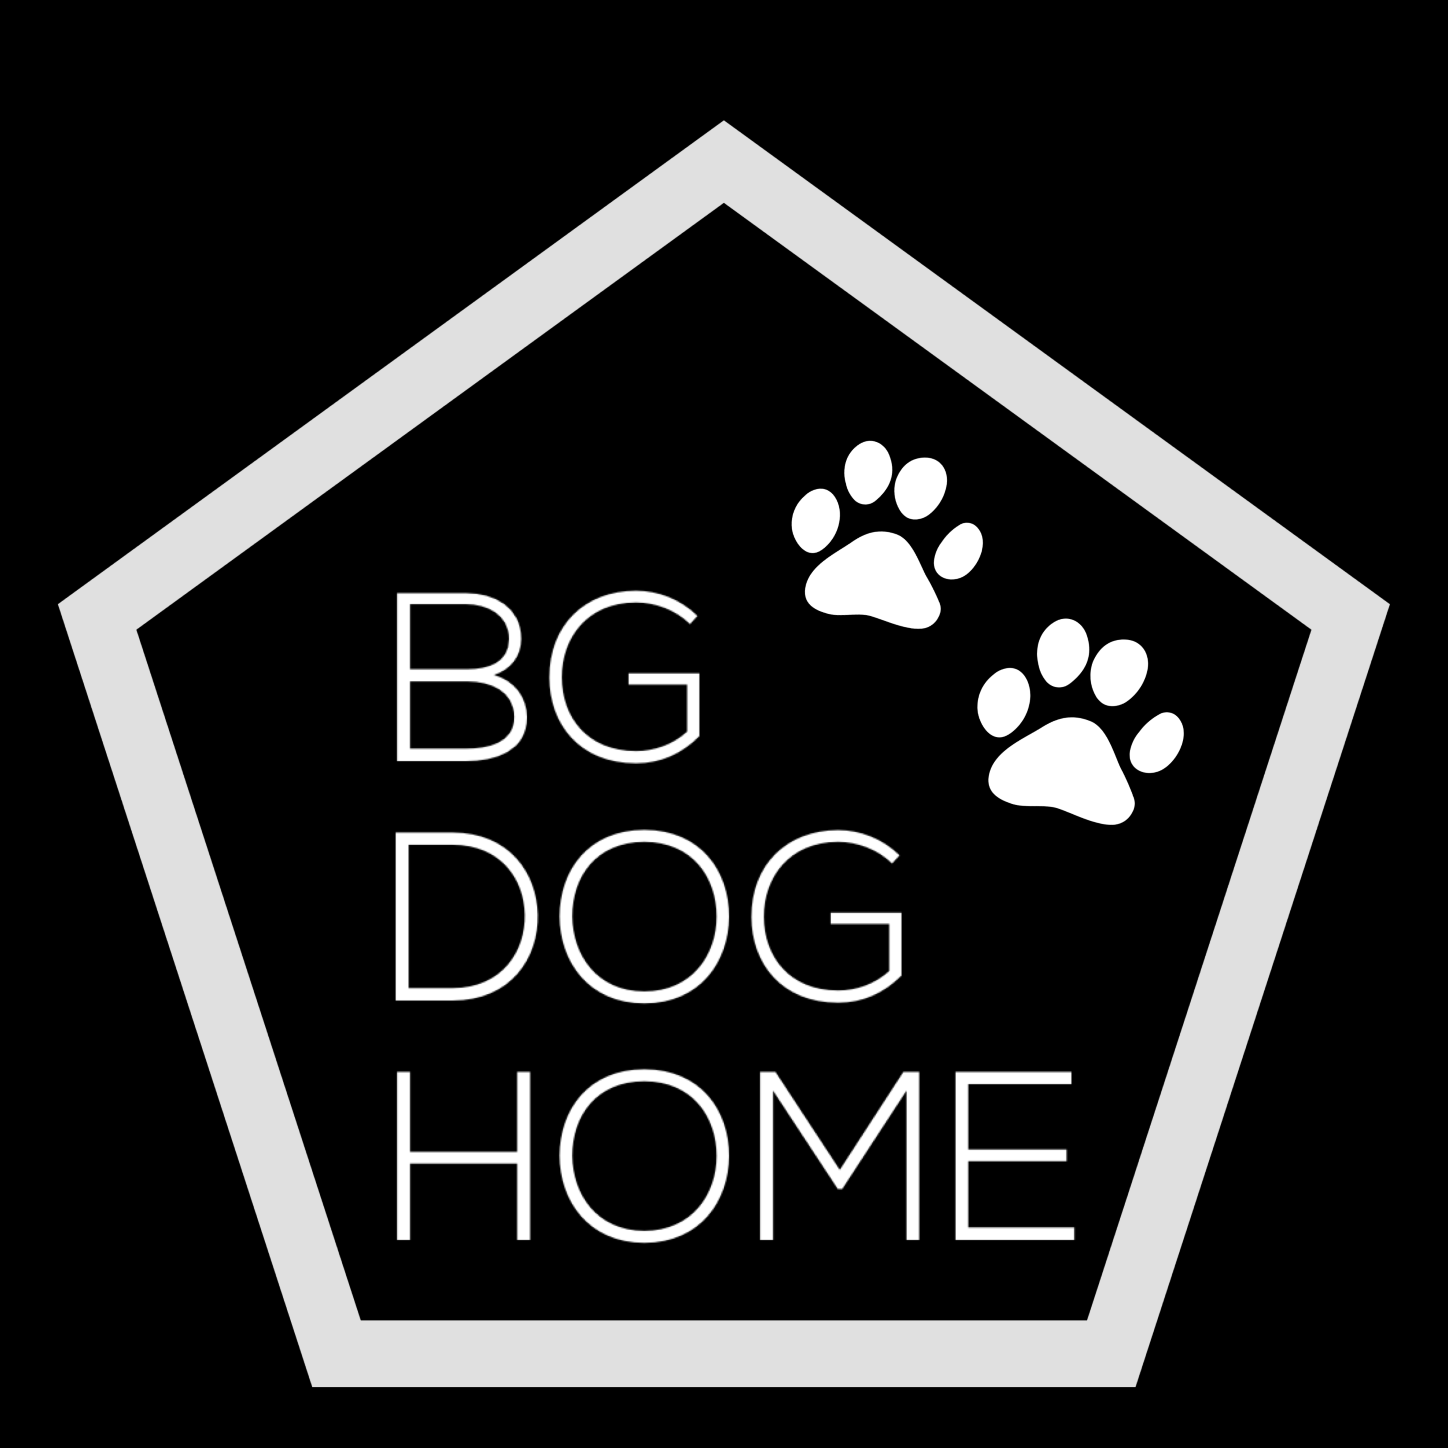 BG DOG HOME asd